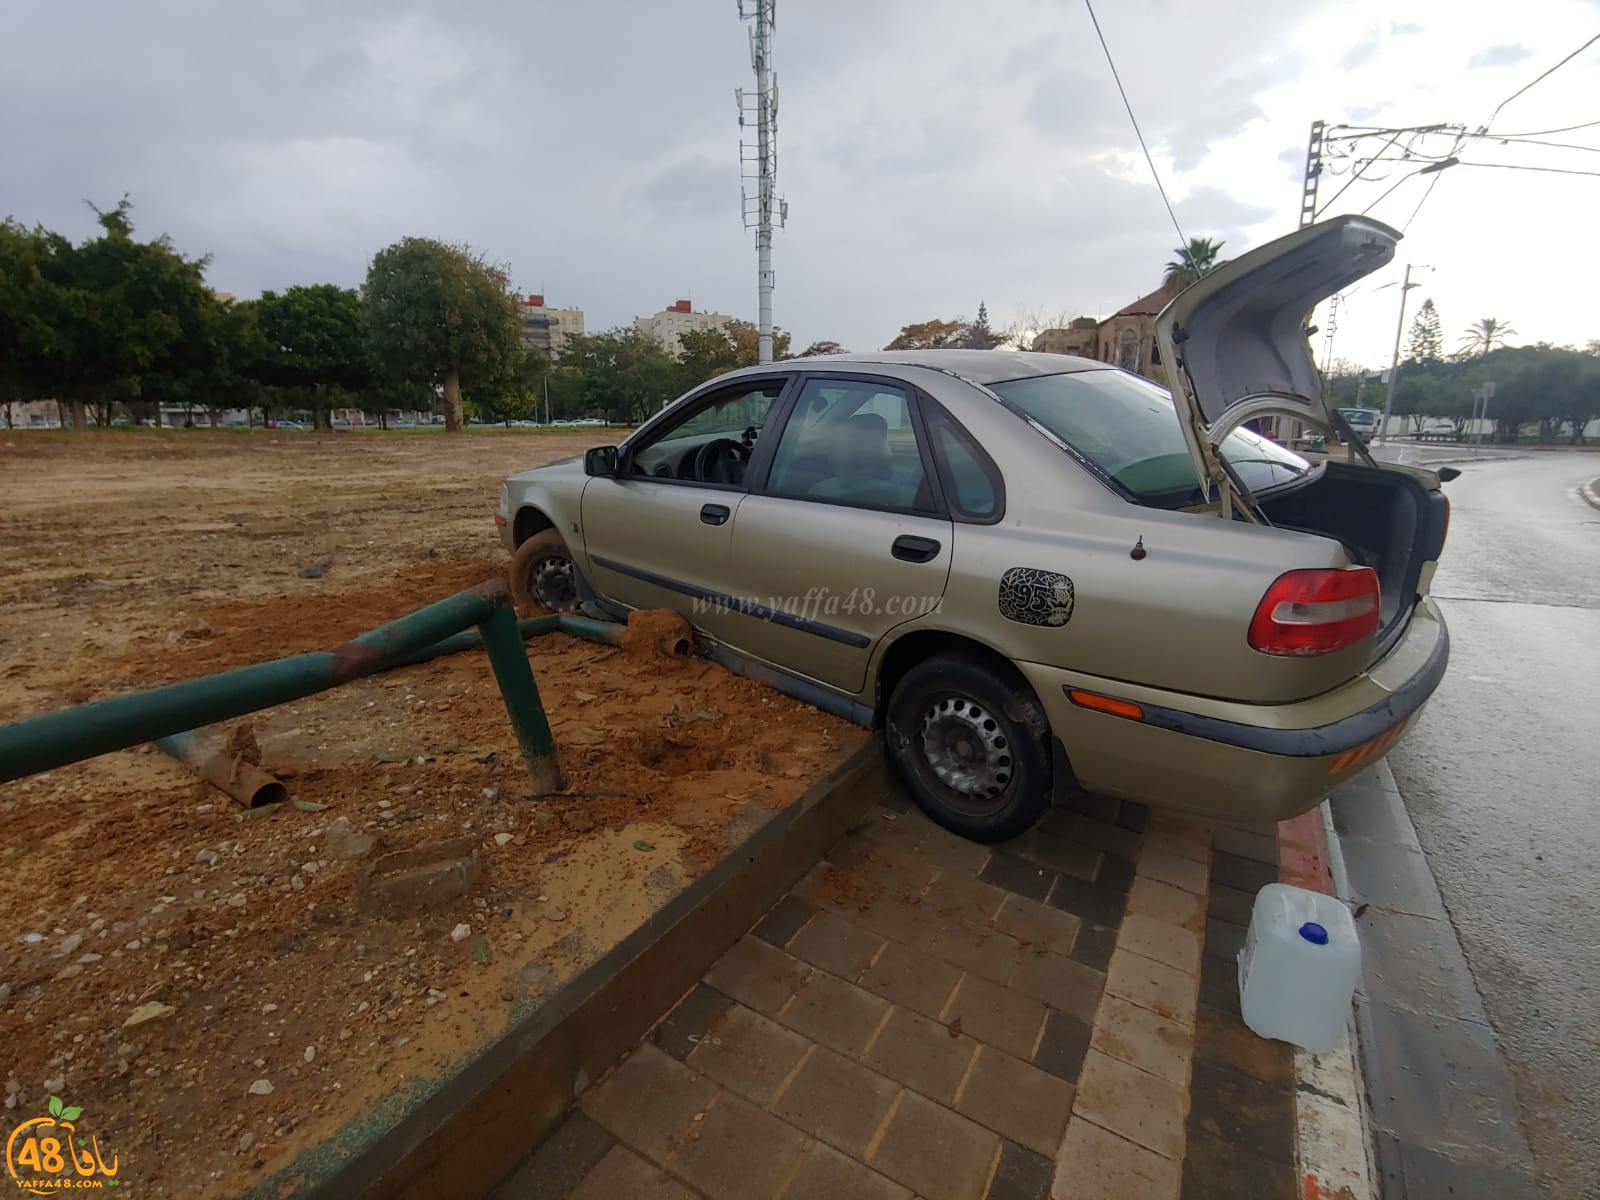  حادث طرق ذاتي في شارع غزة بيافا دون اصابات